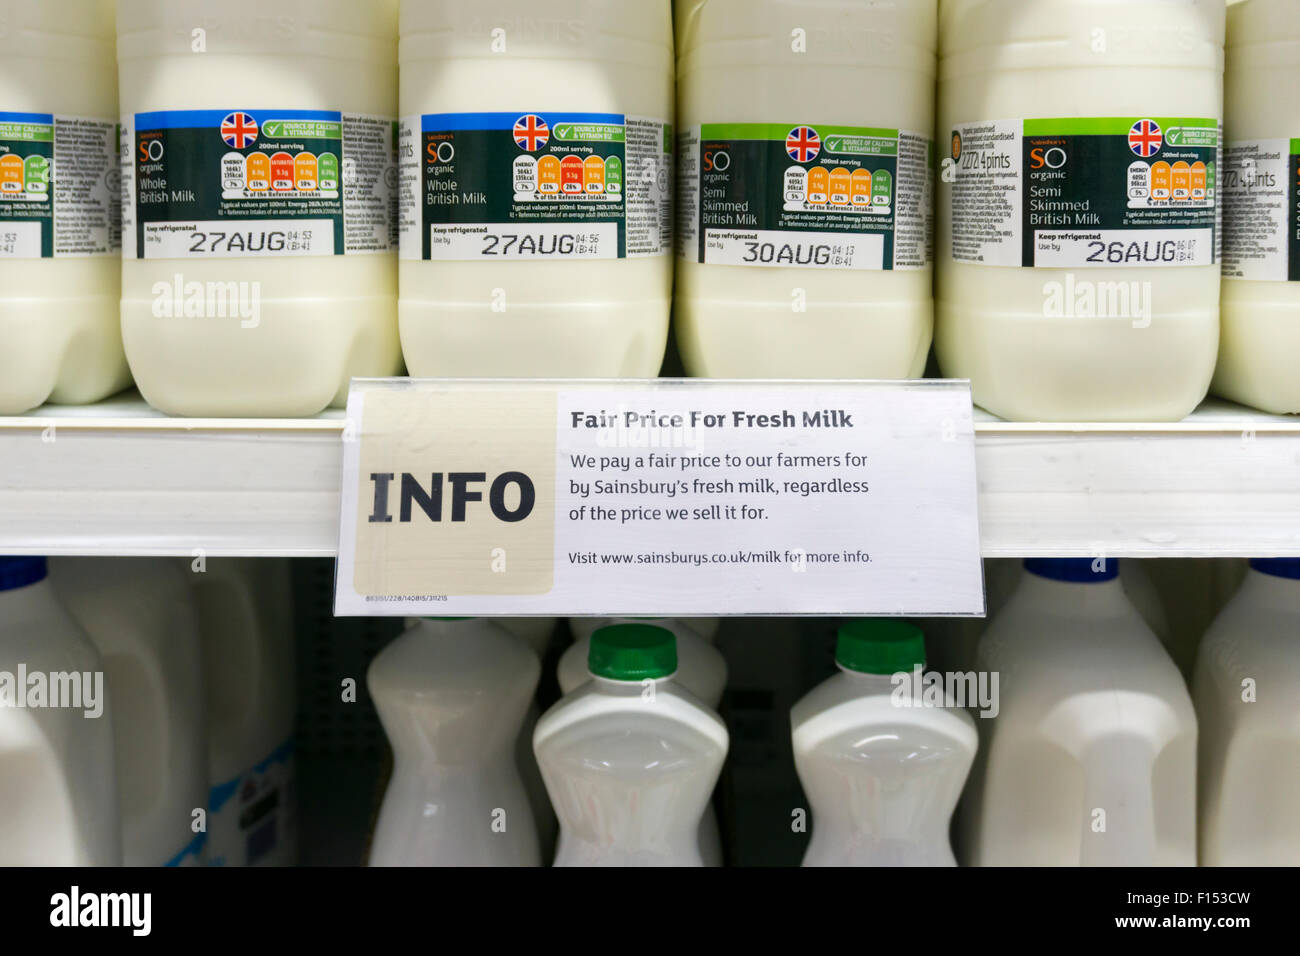 Ein Schild auf einem Supermarktregal sagt, dass die Bauern einen fairen Preis für Milch bezahlt werden.  SIEHE DETAILS IN DER BESCHREIBUNG. Stockfoto